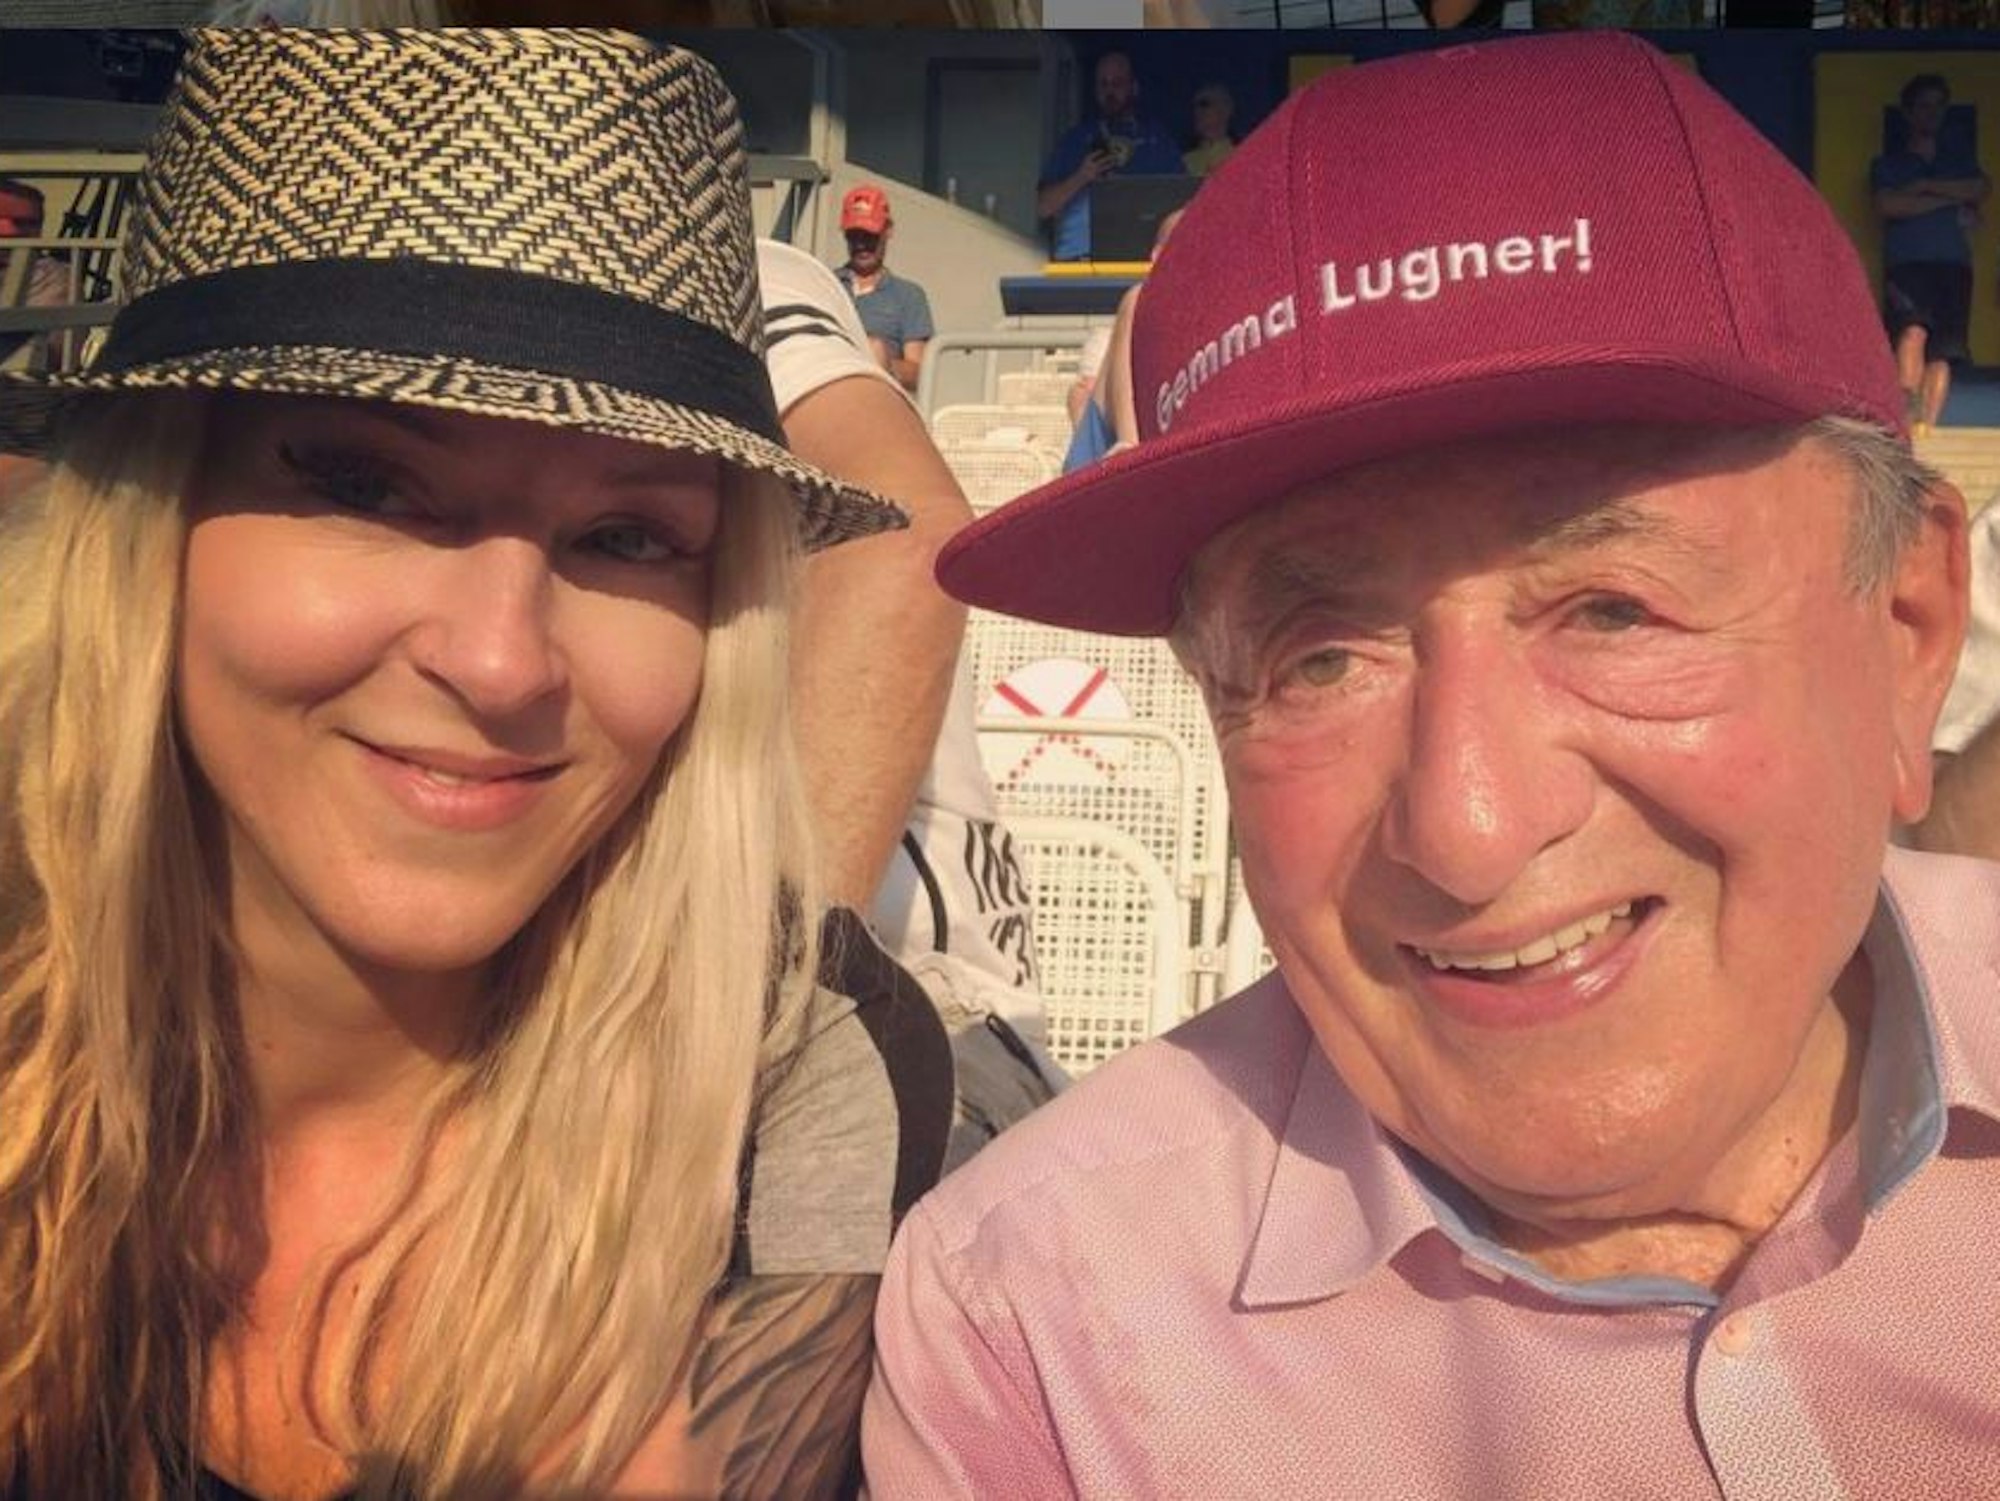 Richard „Mörtel“ Lugner mit seiner Freundin Simone Reiländer auf einem Selfie im Juni 2021.